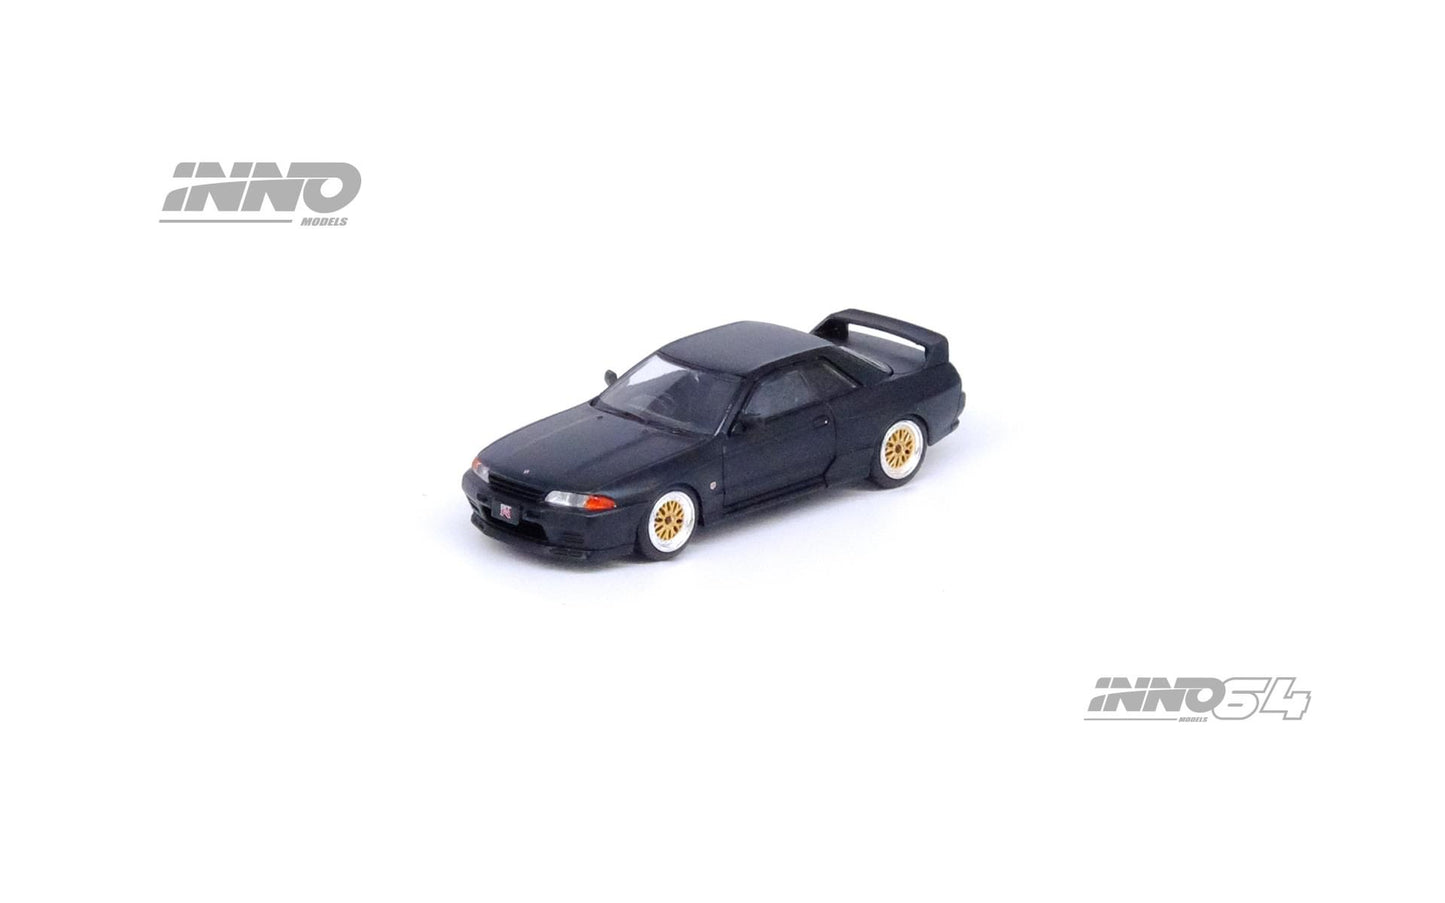 Inno64 1:64 Nissan Skyline GT-R R32 - Matte Black